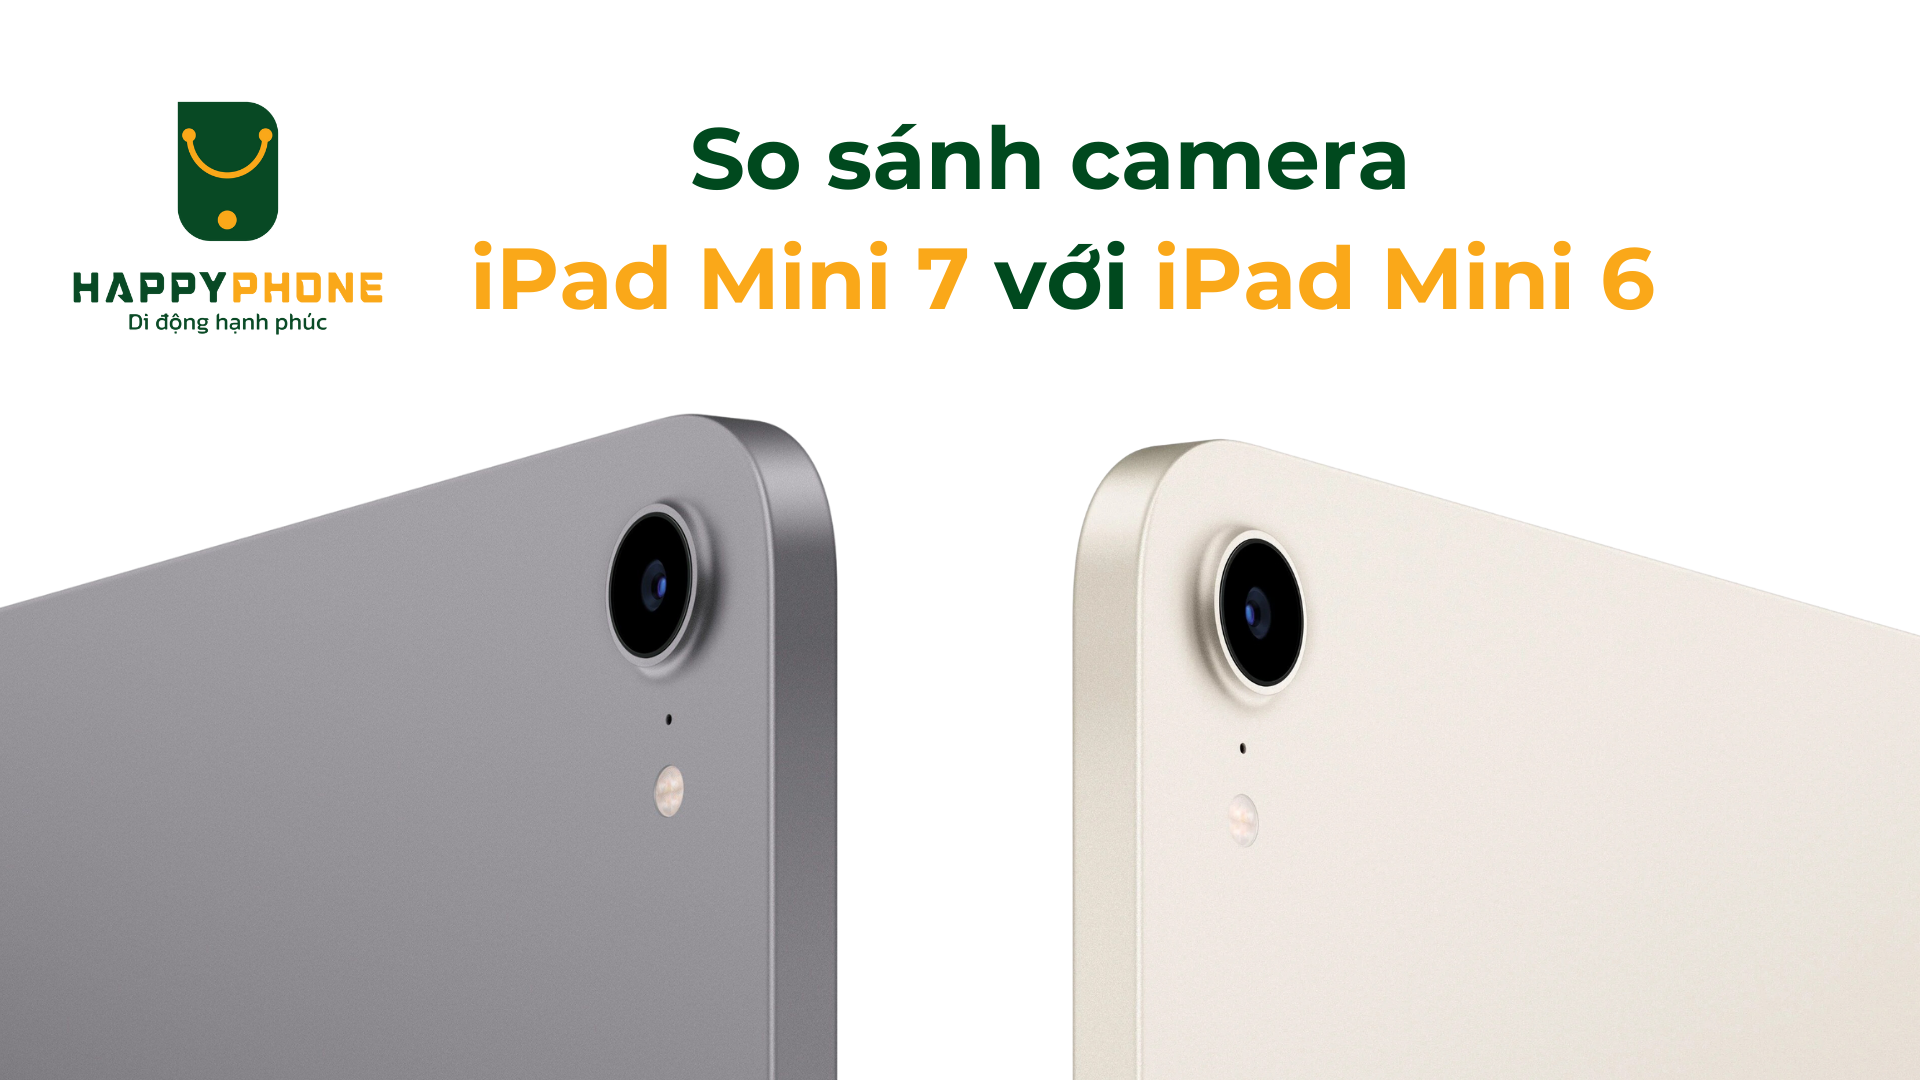 So sánh camera của iPad Mini 7 và iPad Mini 6